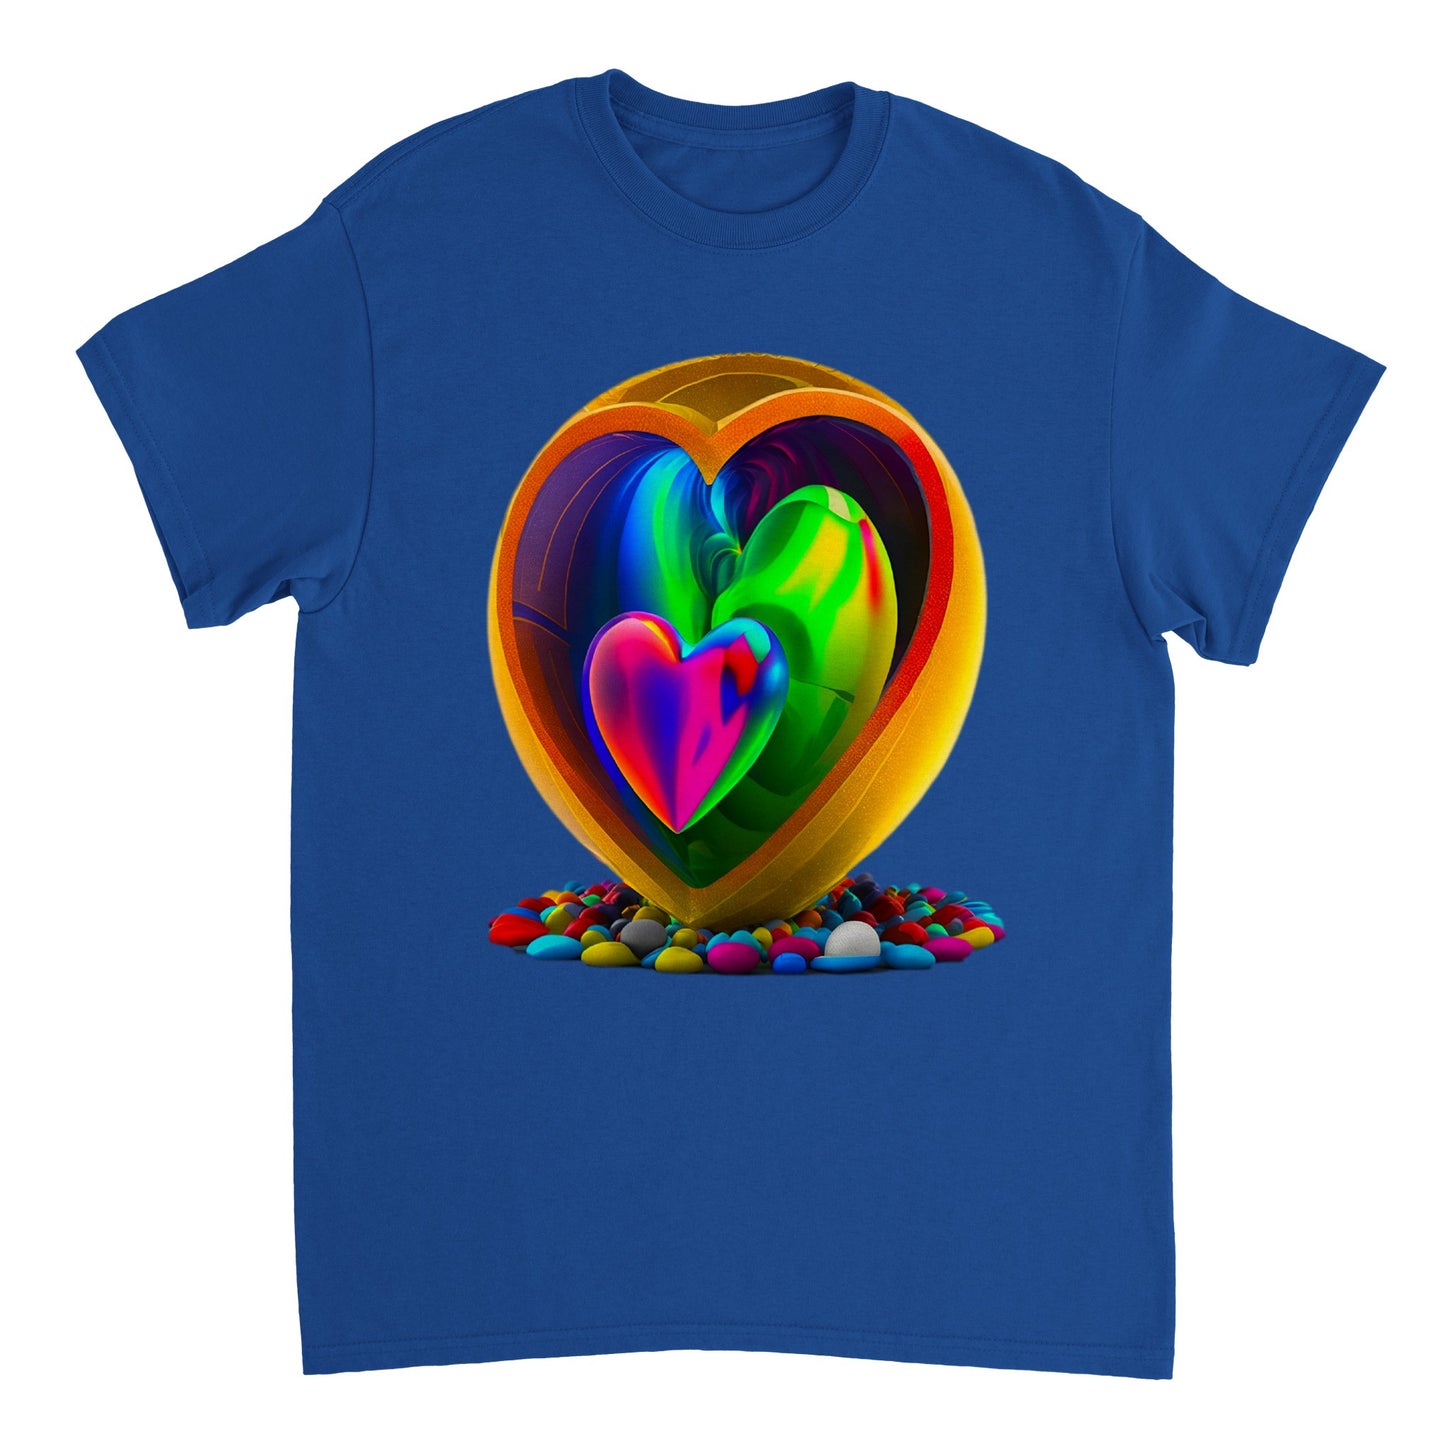 Love Heart - Heavyweight Unisex Crewneck T-shirt 107